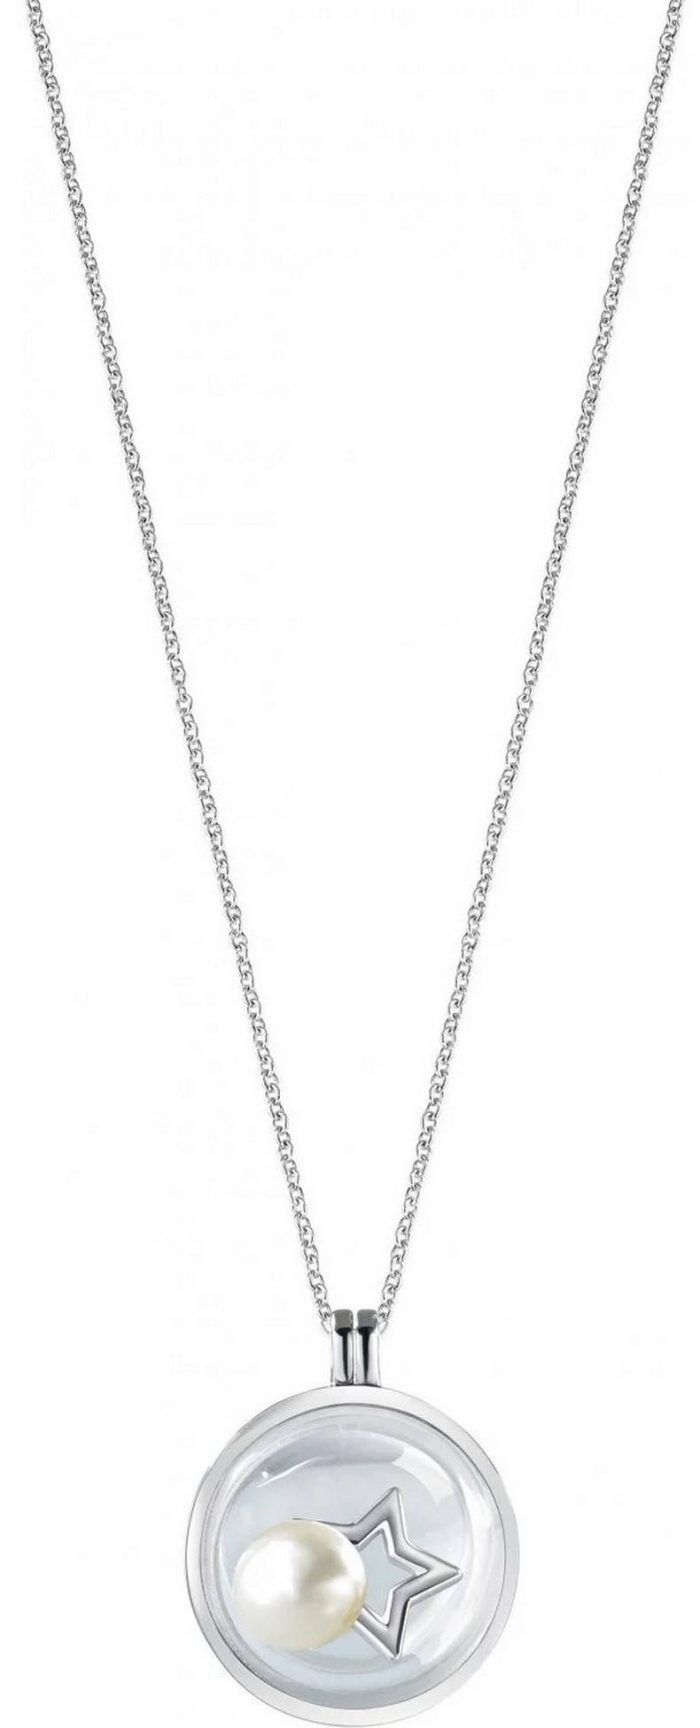 Morellato Scrigno DAmore Rhodium Plated Sterling Silver SAMB01 Womens Necklace